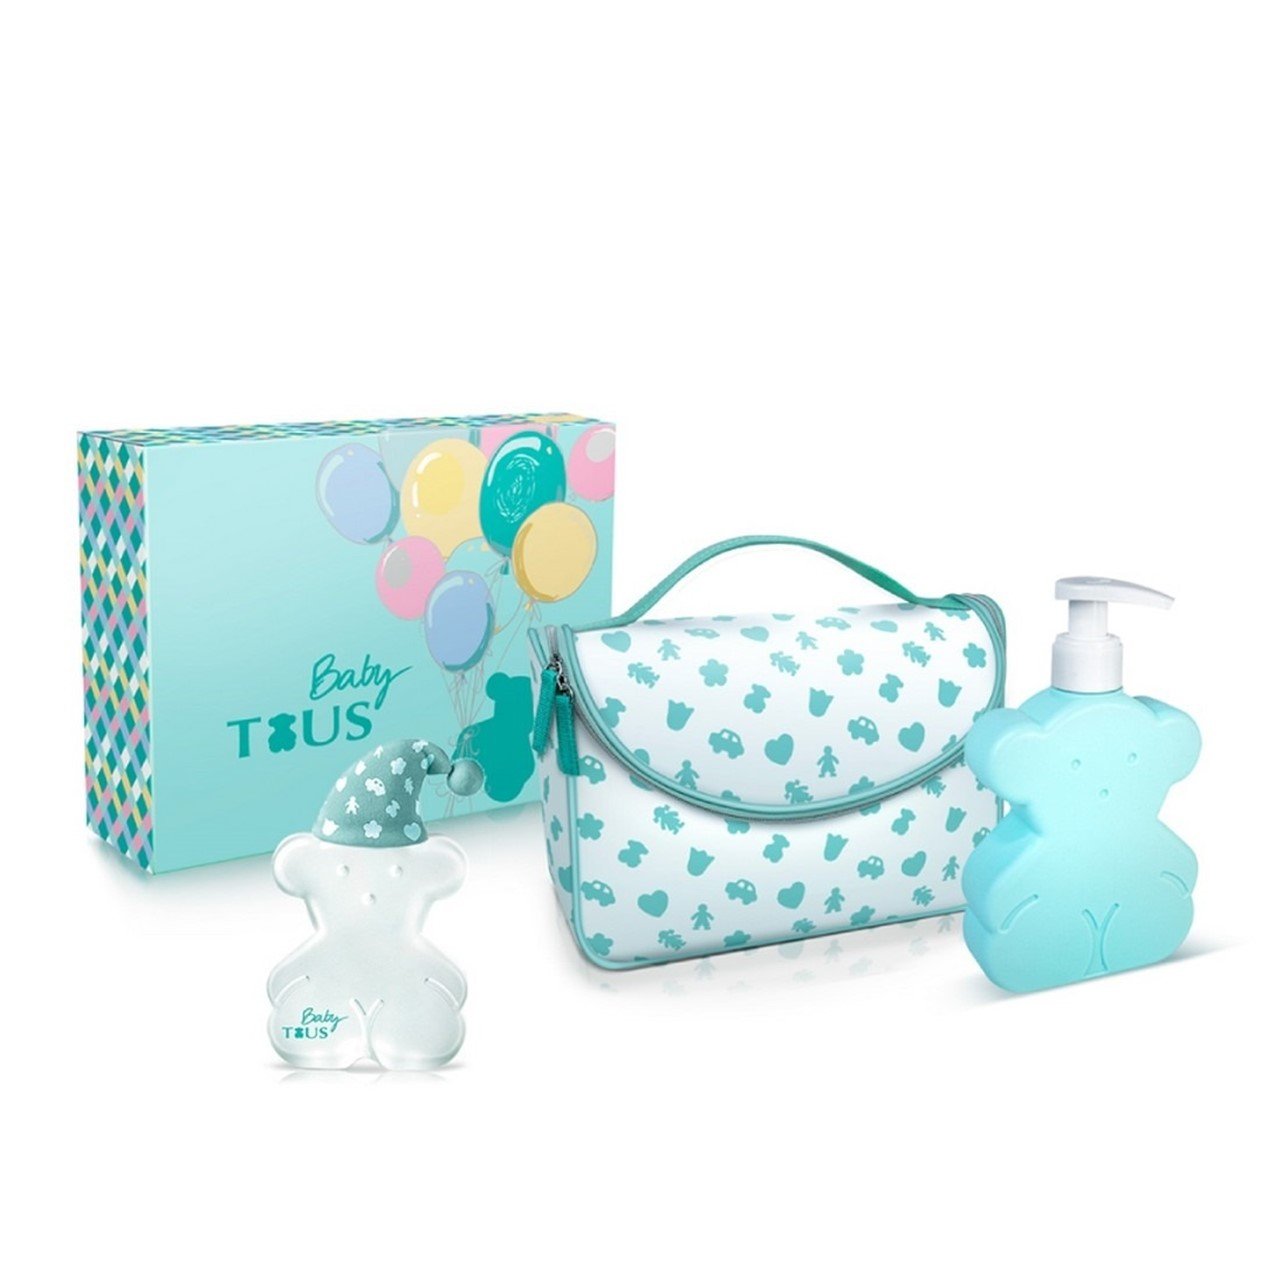 Mini perfumes para bebés como detalles de bautizo para invitados Tous Baby  a dormir Eau de cologne 4,5 ml. original : : Belleza